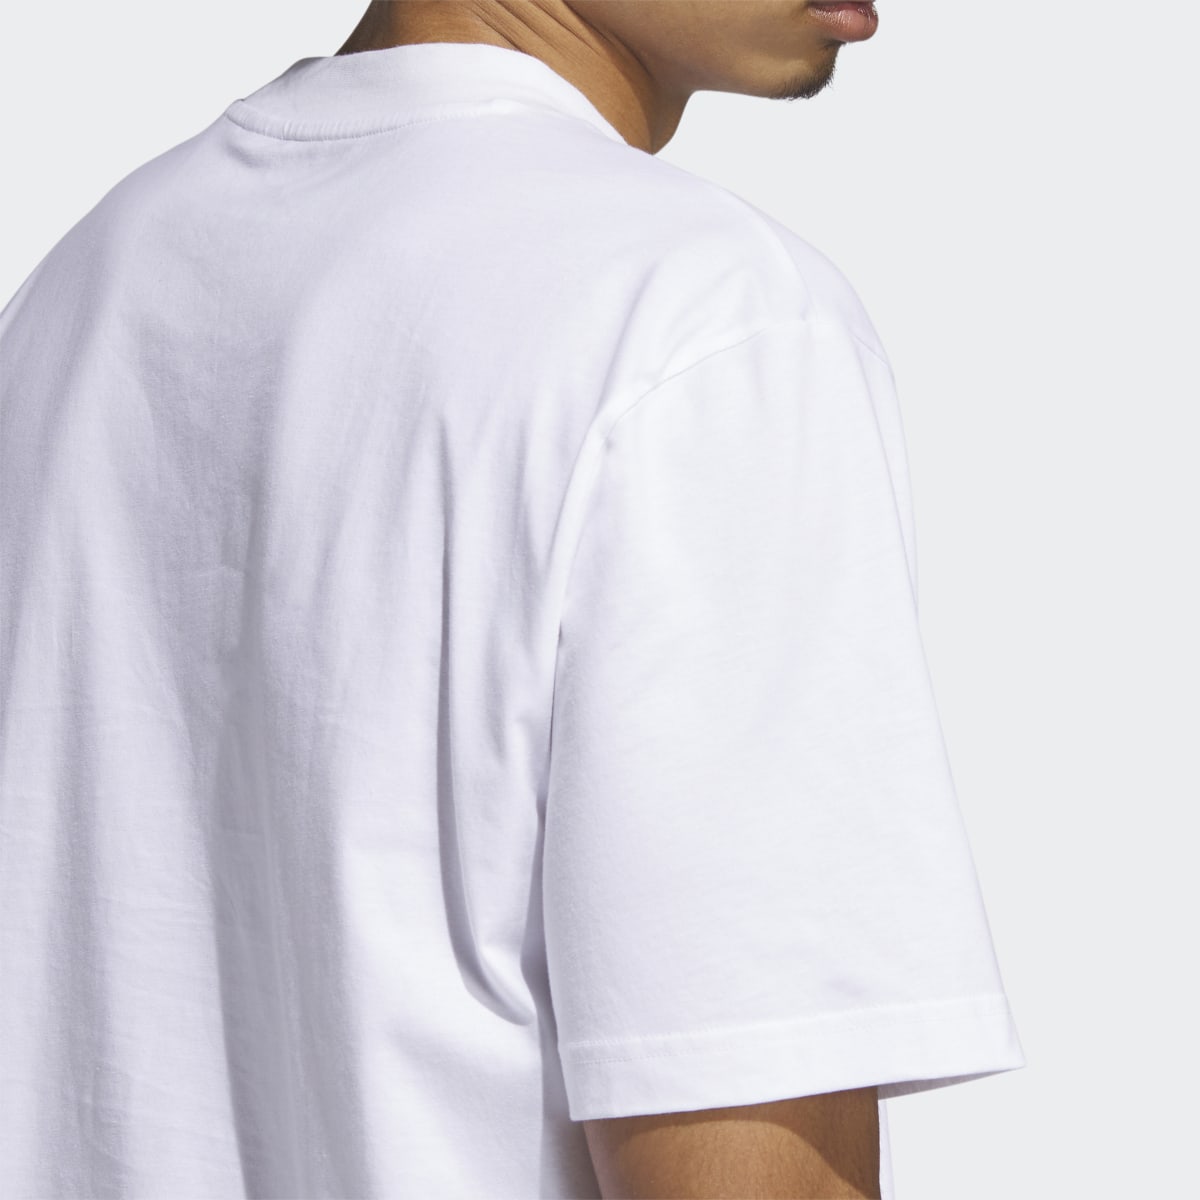 Adidas Camiseta Trae HC Graphic. 7